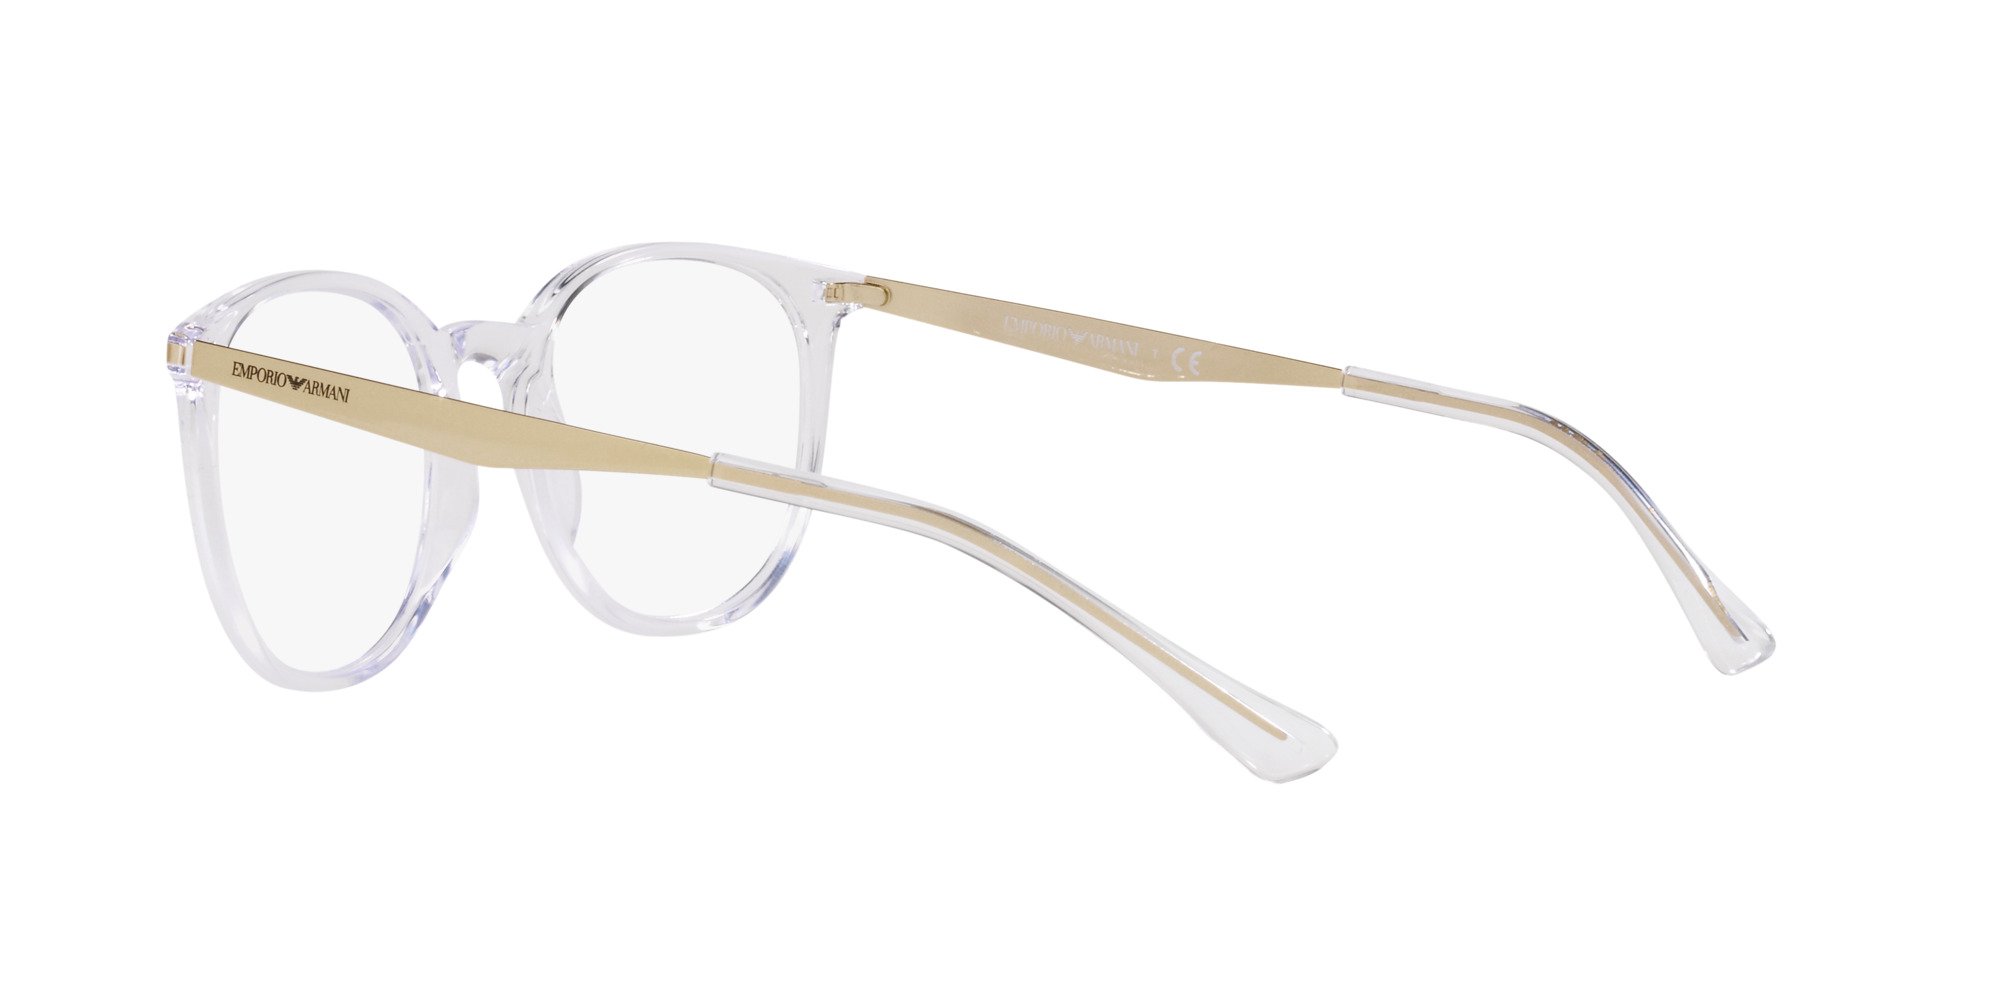 Das Bild zeigt die Korrektionsbrille EA3168 5371 von der Marke Emporio Armani in Crystal.